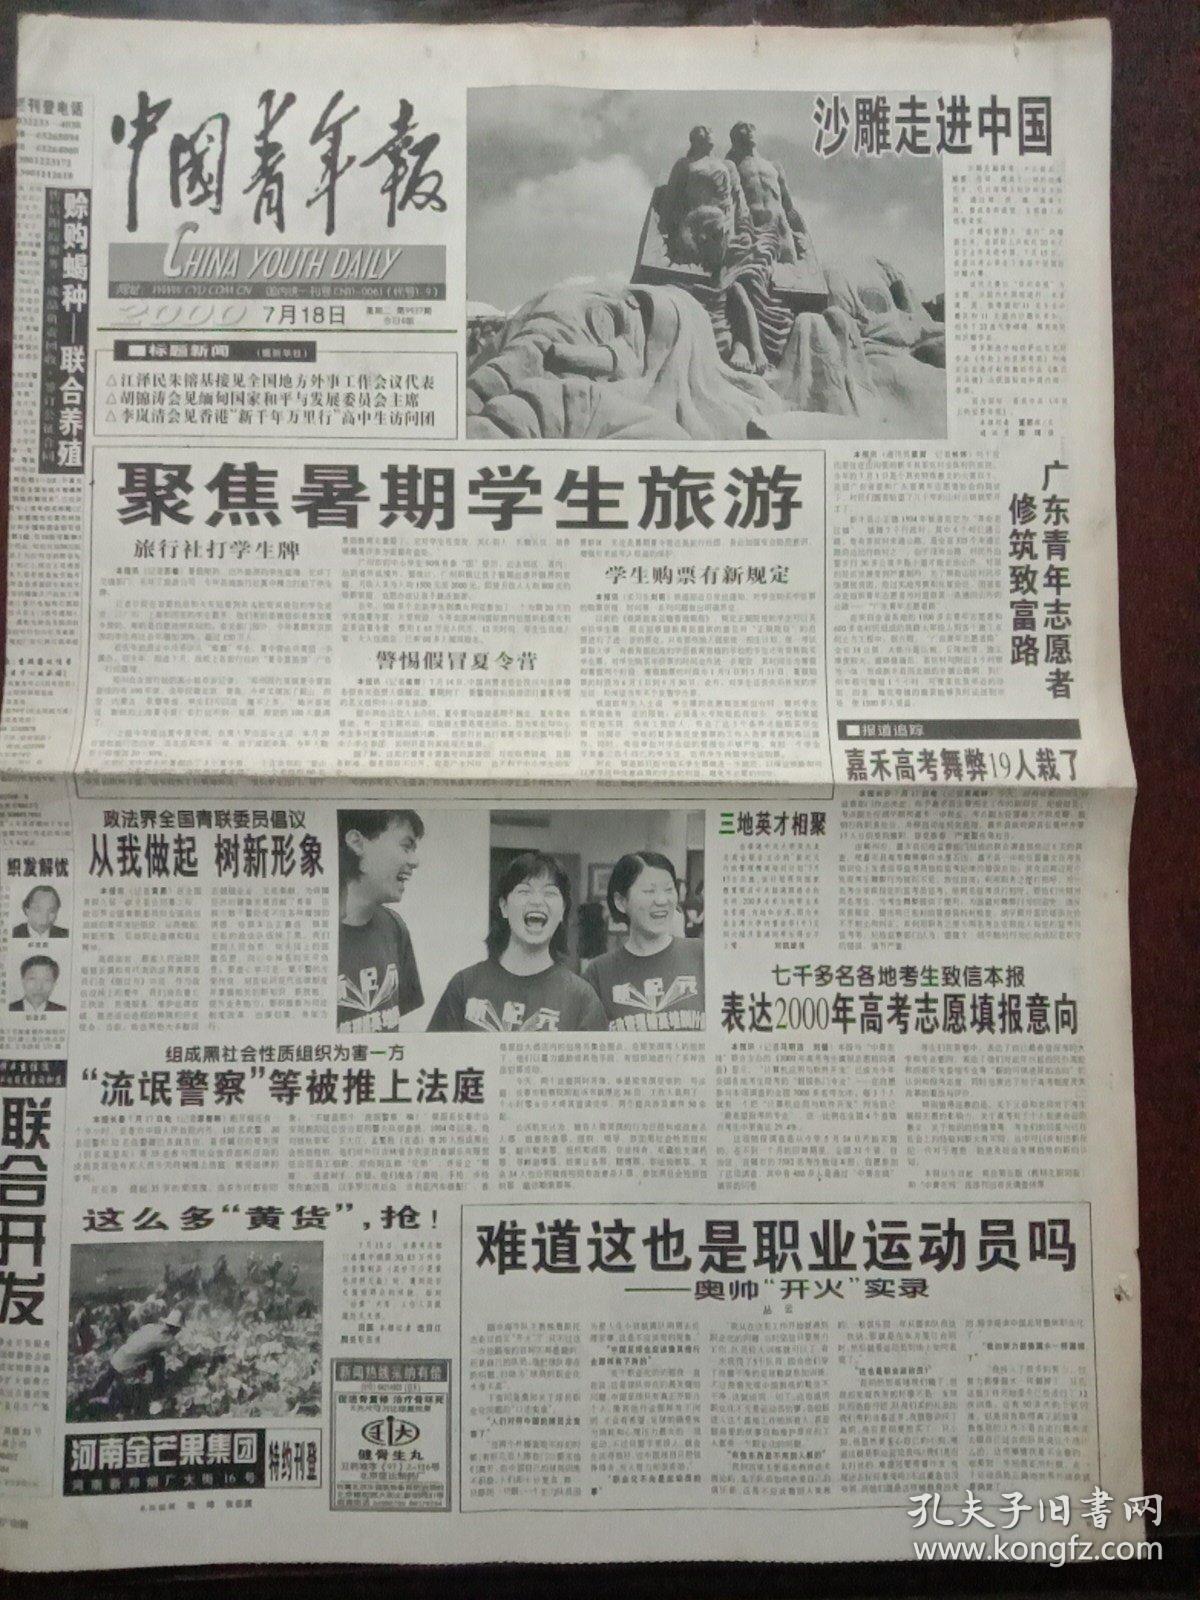 中国青年报，2000年7月18日沙雕走进中国；嘉禾高考舞弊19人栽了，对开八版。